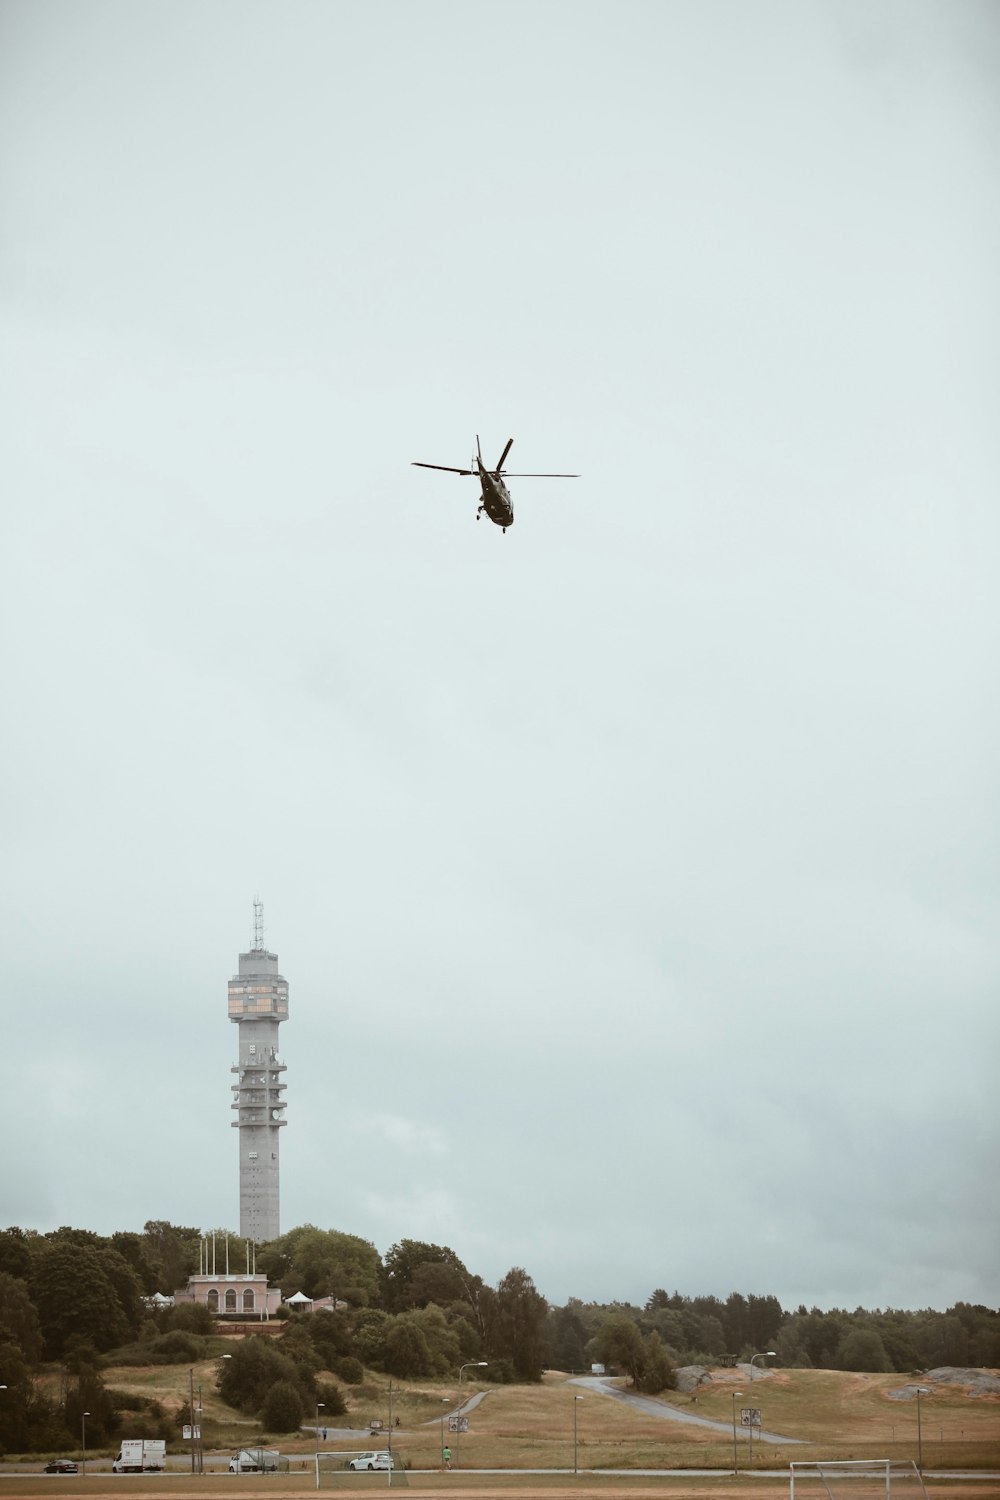 Low-Angle-Fotografie eines schwarzen Hubschraubers über einem grauen Betonturm bei Tag